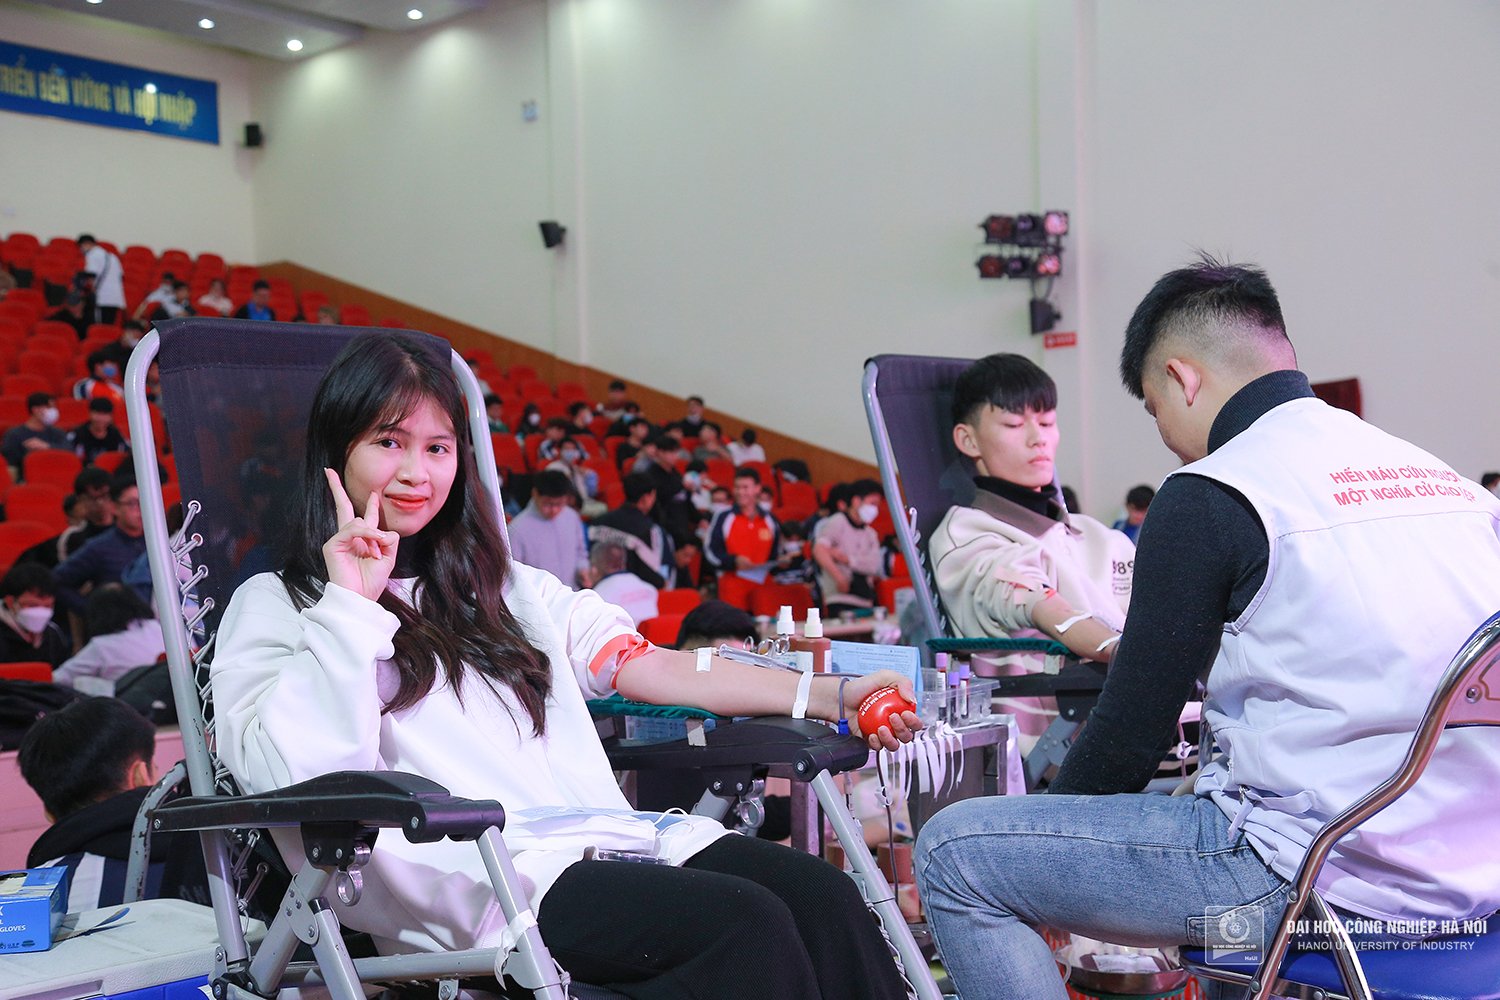 Hơn 800 sinh viên Đại học Công nghiệp Hà Nội tham gia hiến máu nhân đạo